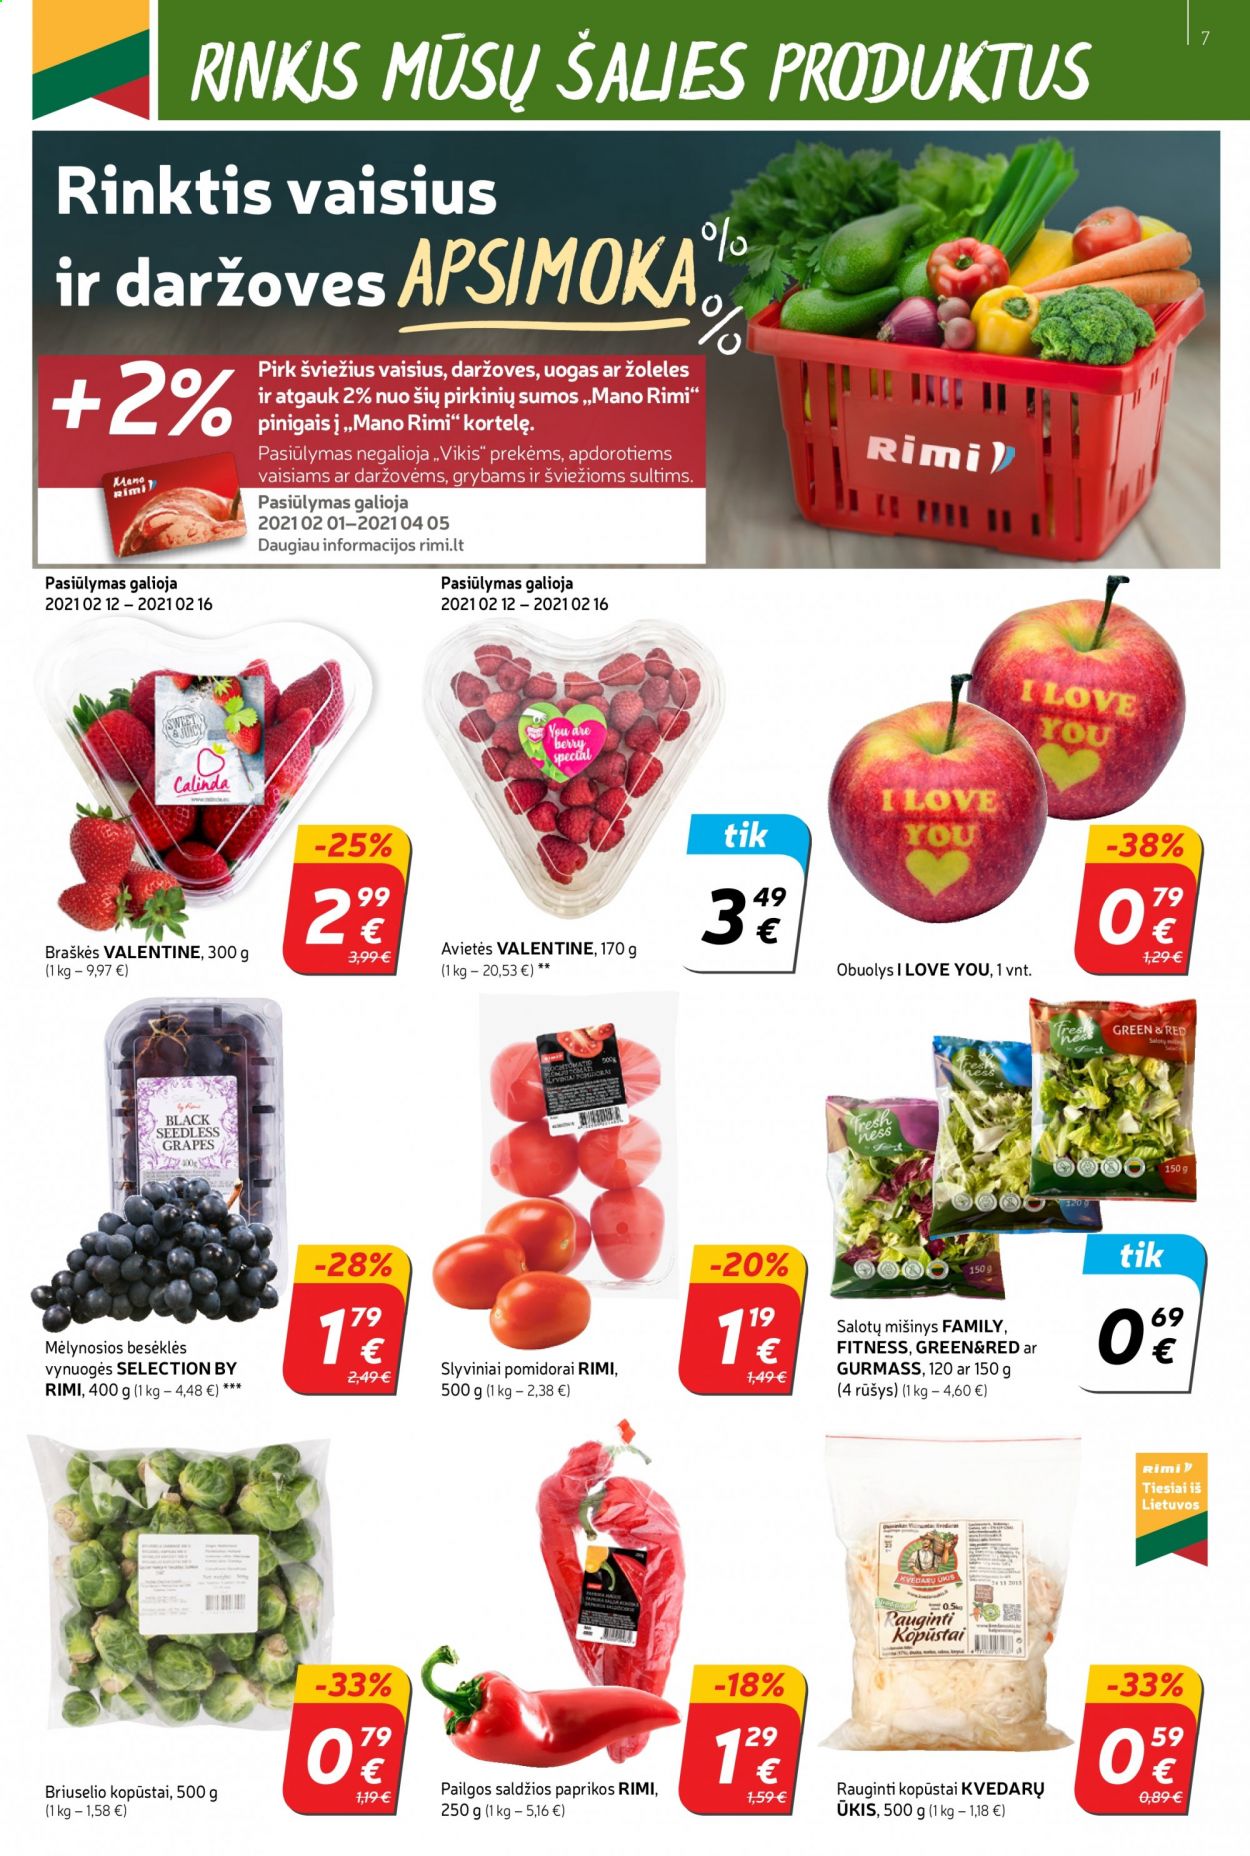 thumbnail - „Rimi“ leidinys - 2021 02 09 - 2021 02 16 - Išpardavimų produktai - briuselio kopūstai, kopūstai, paprikos, pomidorai, slyviniai pomidorai, avietės, braškės, obuolys, vynuogės. 7 puslapis.